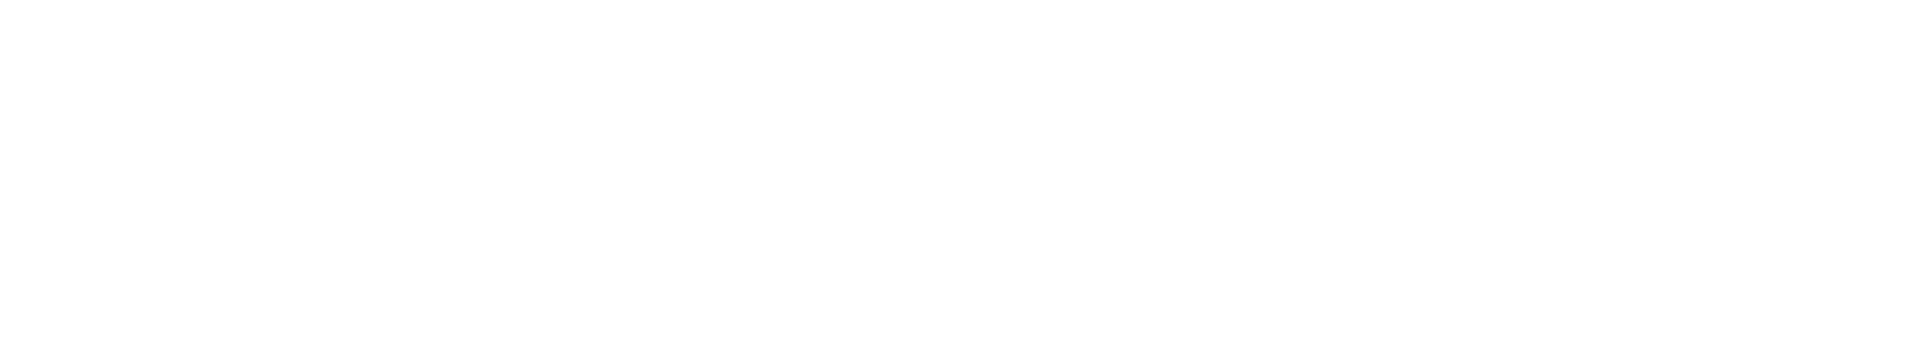 AssociatesAndPartners.com